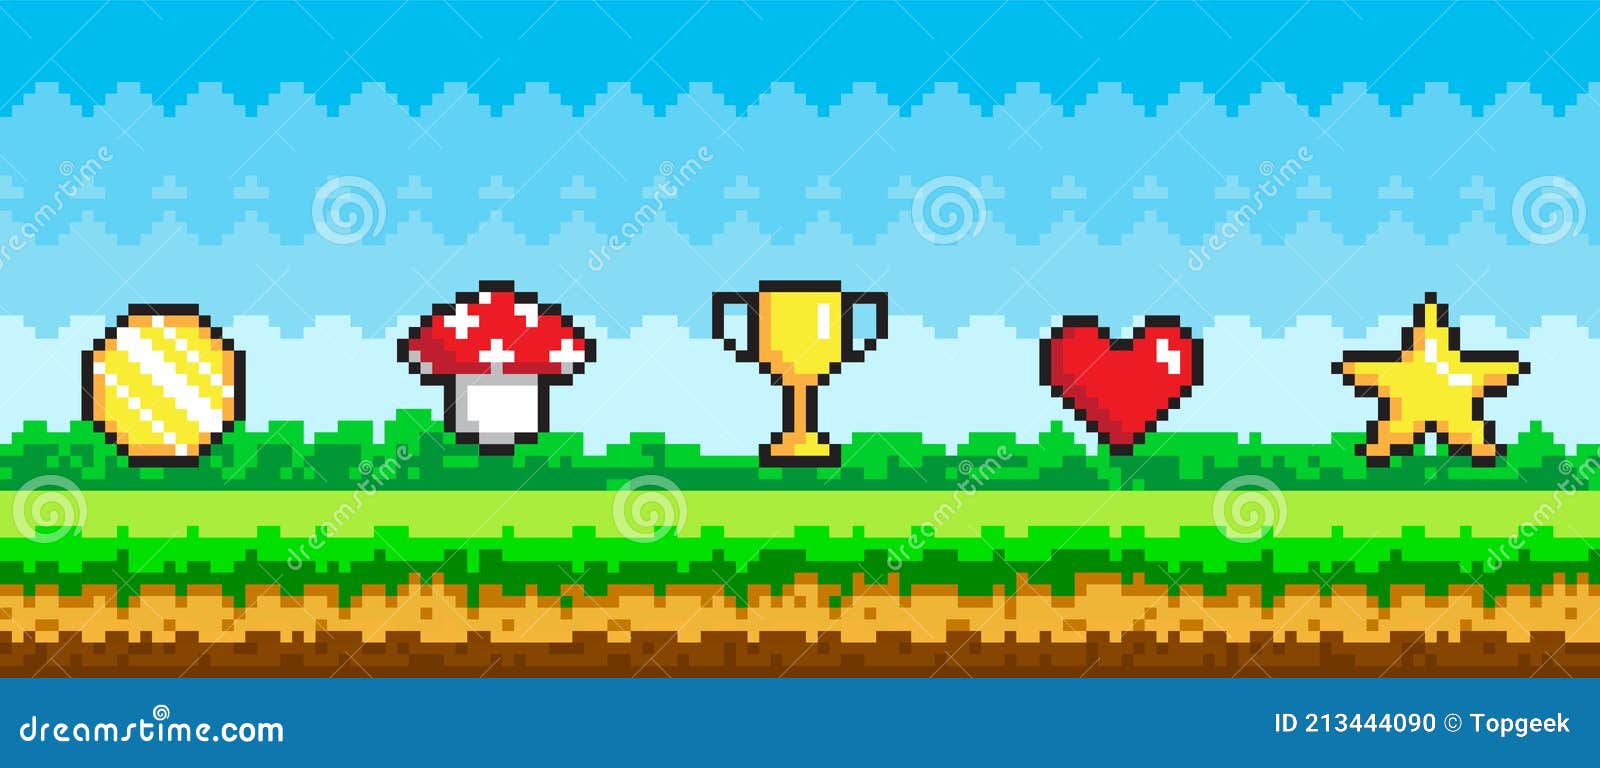 Trong thế giới game, thành tích là yếu tố quan trọng nhất giúp bạn tiến lên phía trước. Với Pixel Game Reward Object và chất lượng đồ họa sắc nét, bạn sẽ nhận được sự khích lệ cần thiết để tiếp tục chinh phục những thử thách khó khăn trong vô vàn trò chơi hấp dẫn!